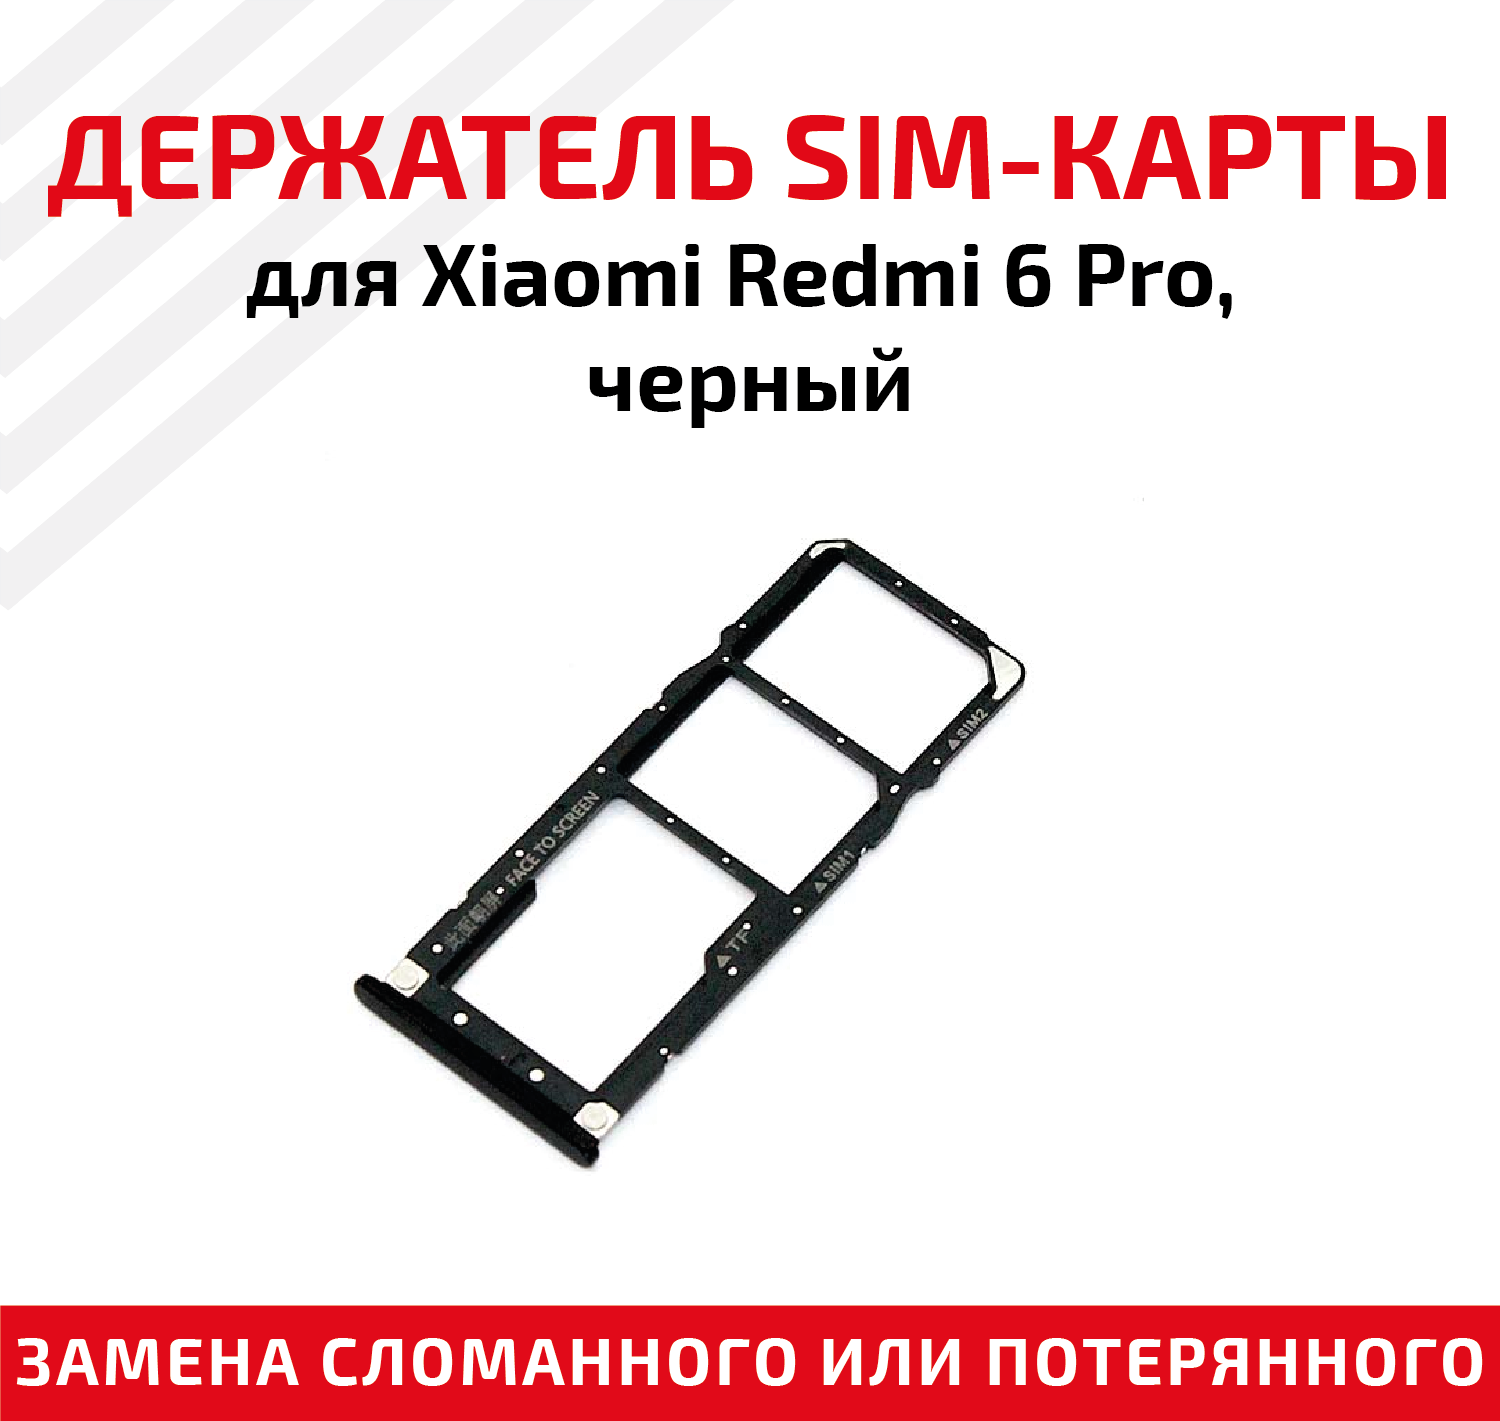 Лоток (держатель, контейнер, слот) SIM-карты для мобильного телефона (смартфона) Xiaomi Redmi 6 Pro, черный